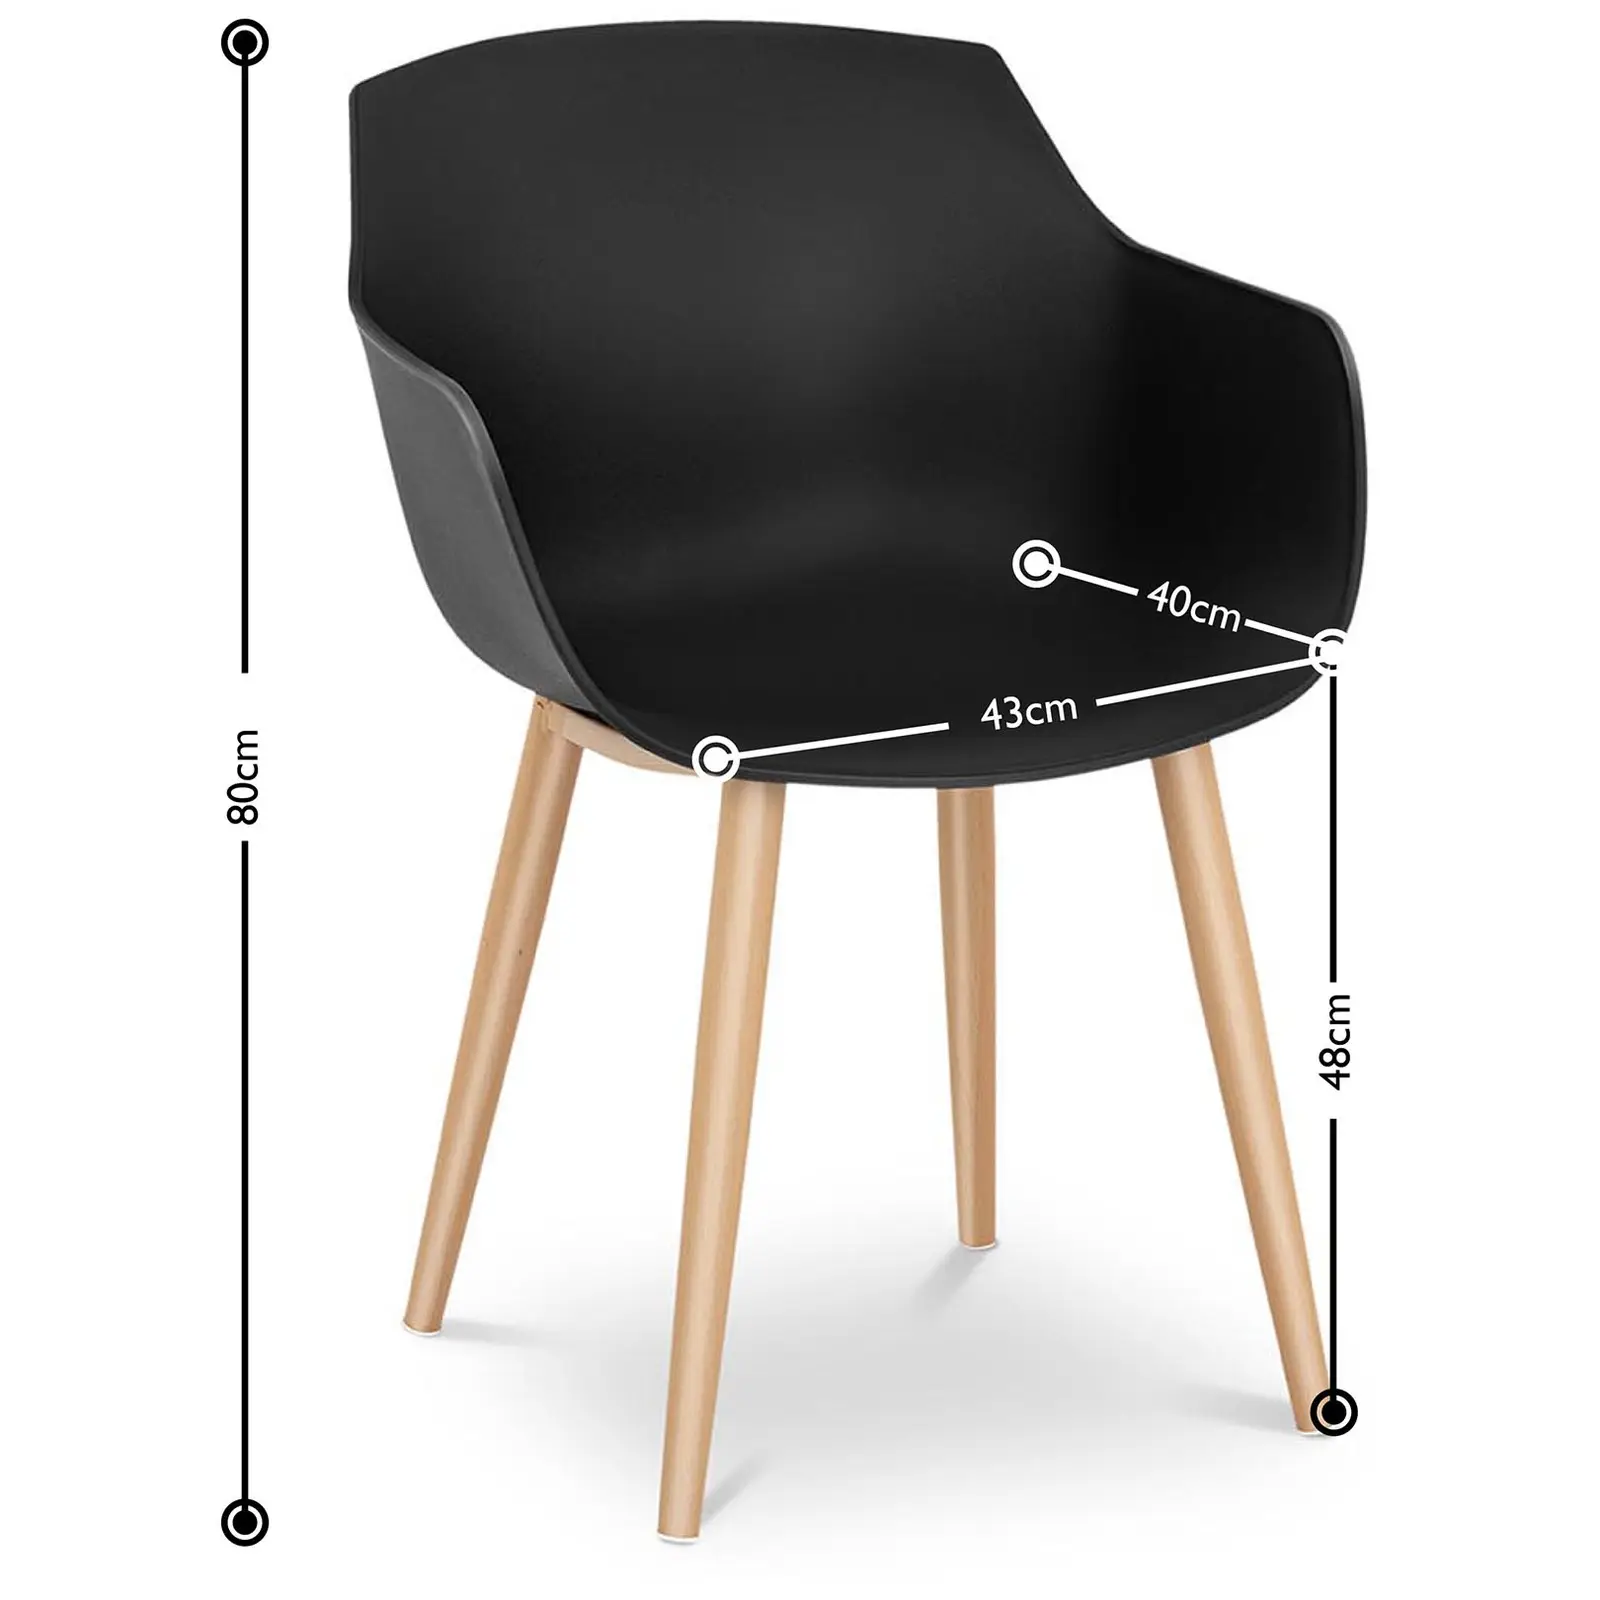 Stuhl - 2er Set - bis 150 kg - Sitzfläche 43 x 40 cm - schwarz